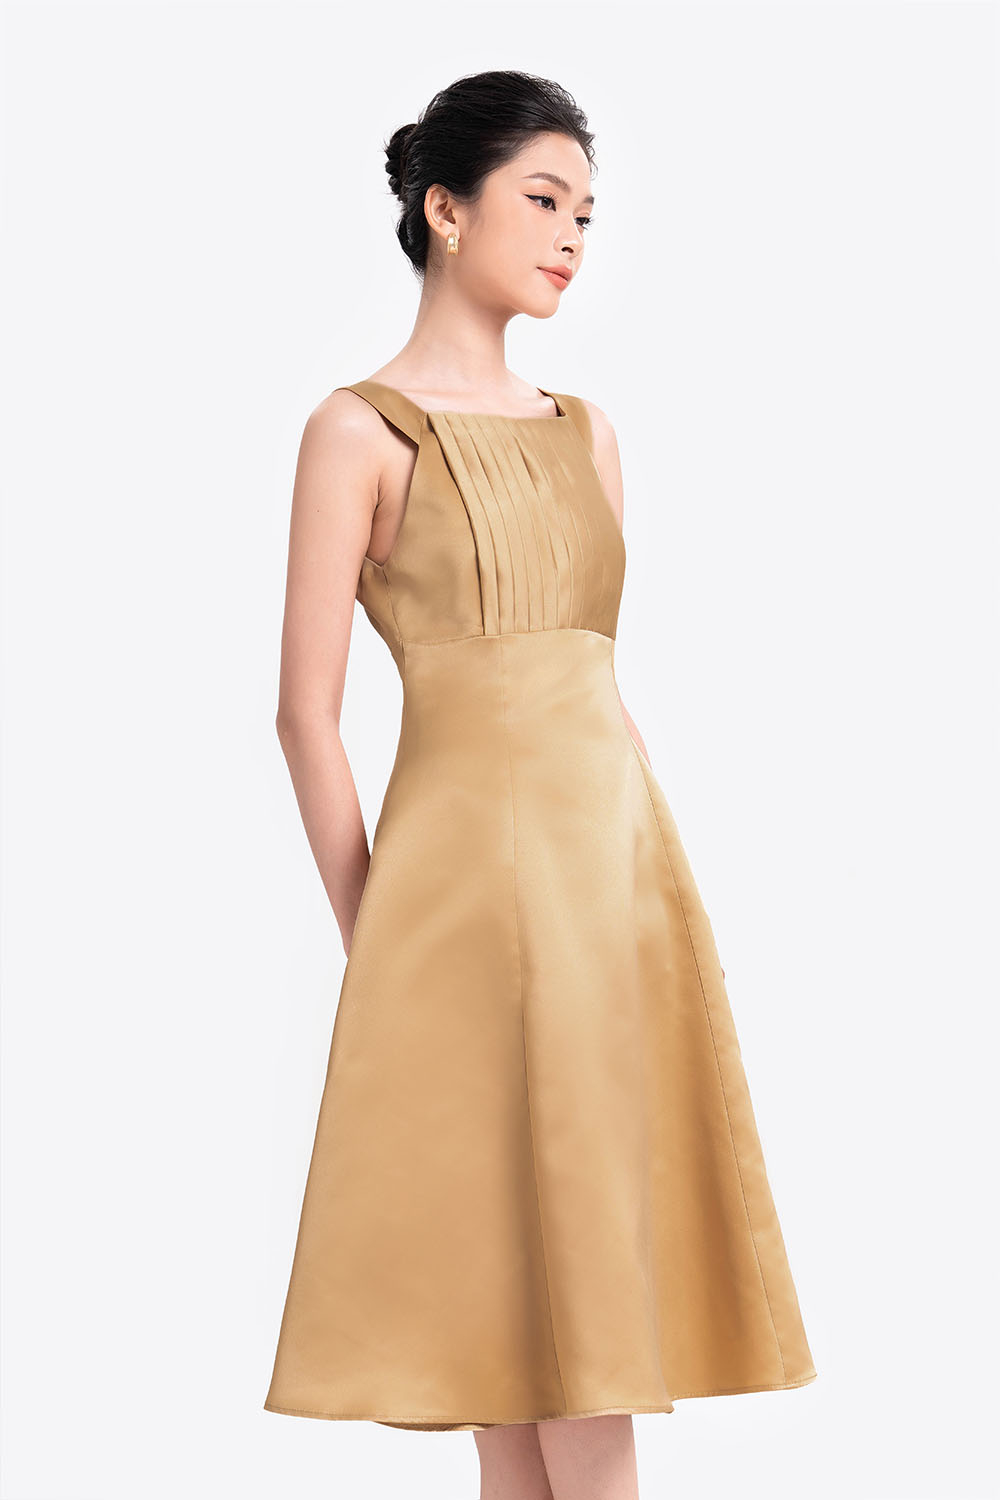 Đầm Váy Dự Tiệc Màu Vàng Body Tôn Dáng, Thiết Kế Đổ Sóng Phối Bèo H01 -  Xuân Quỳnh Luxury | Lazada.vn